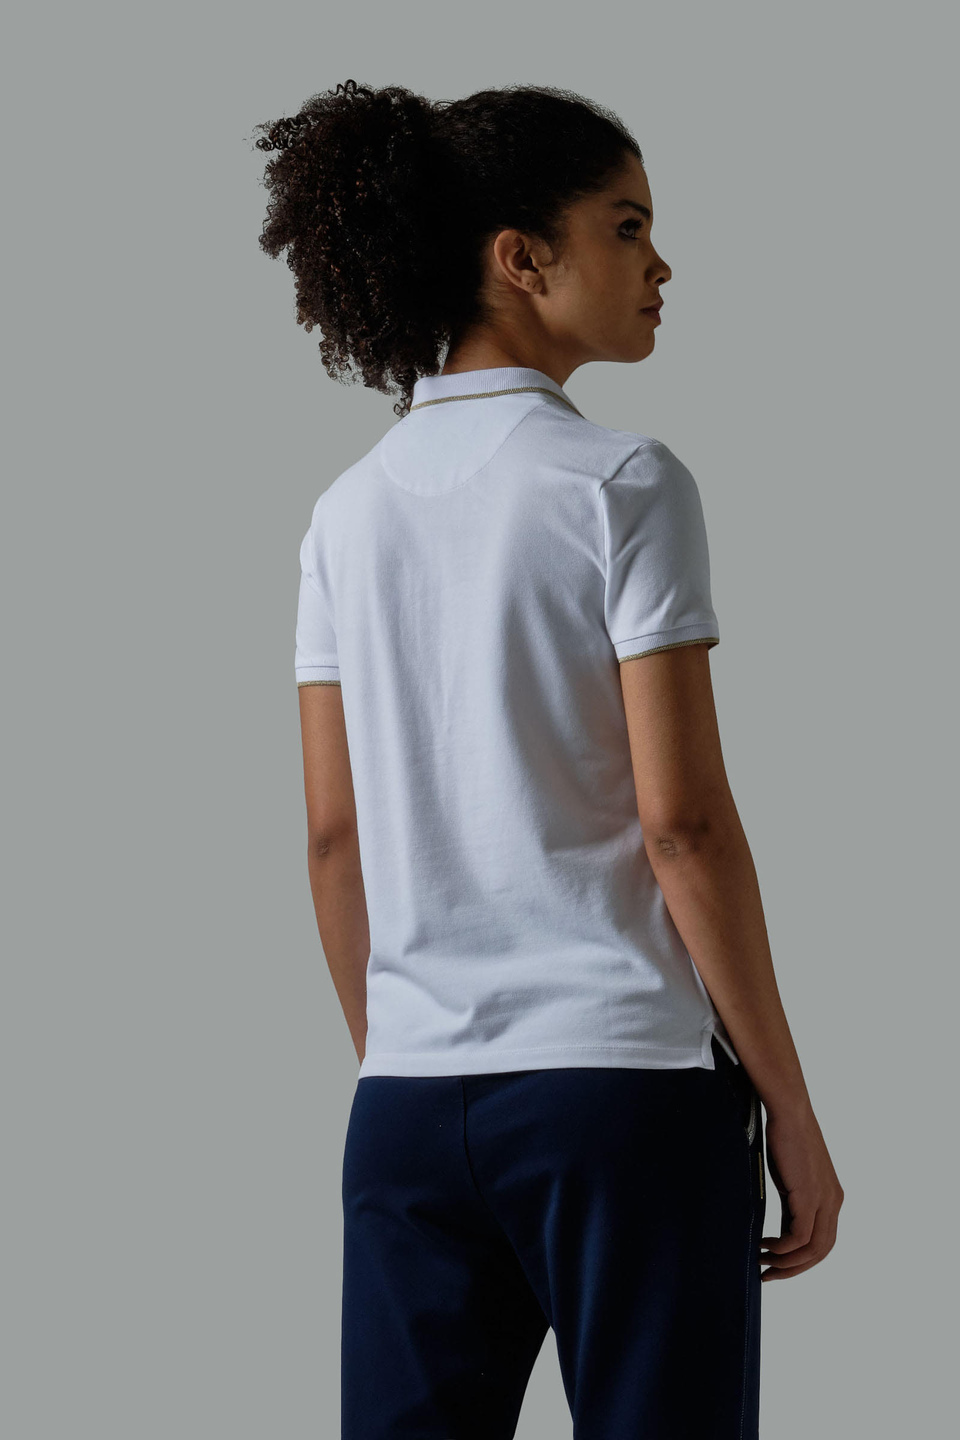 Regular-fit sequin polo shirt - La Martina - Official Online Shop